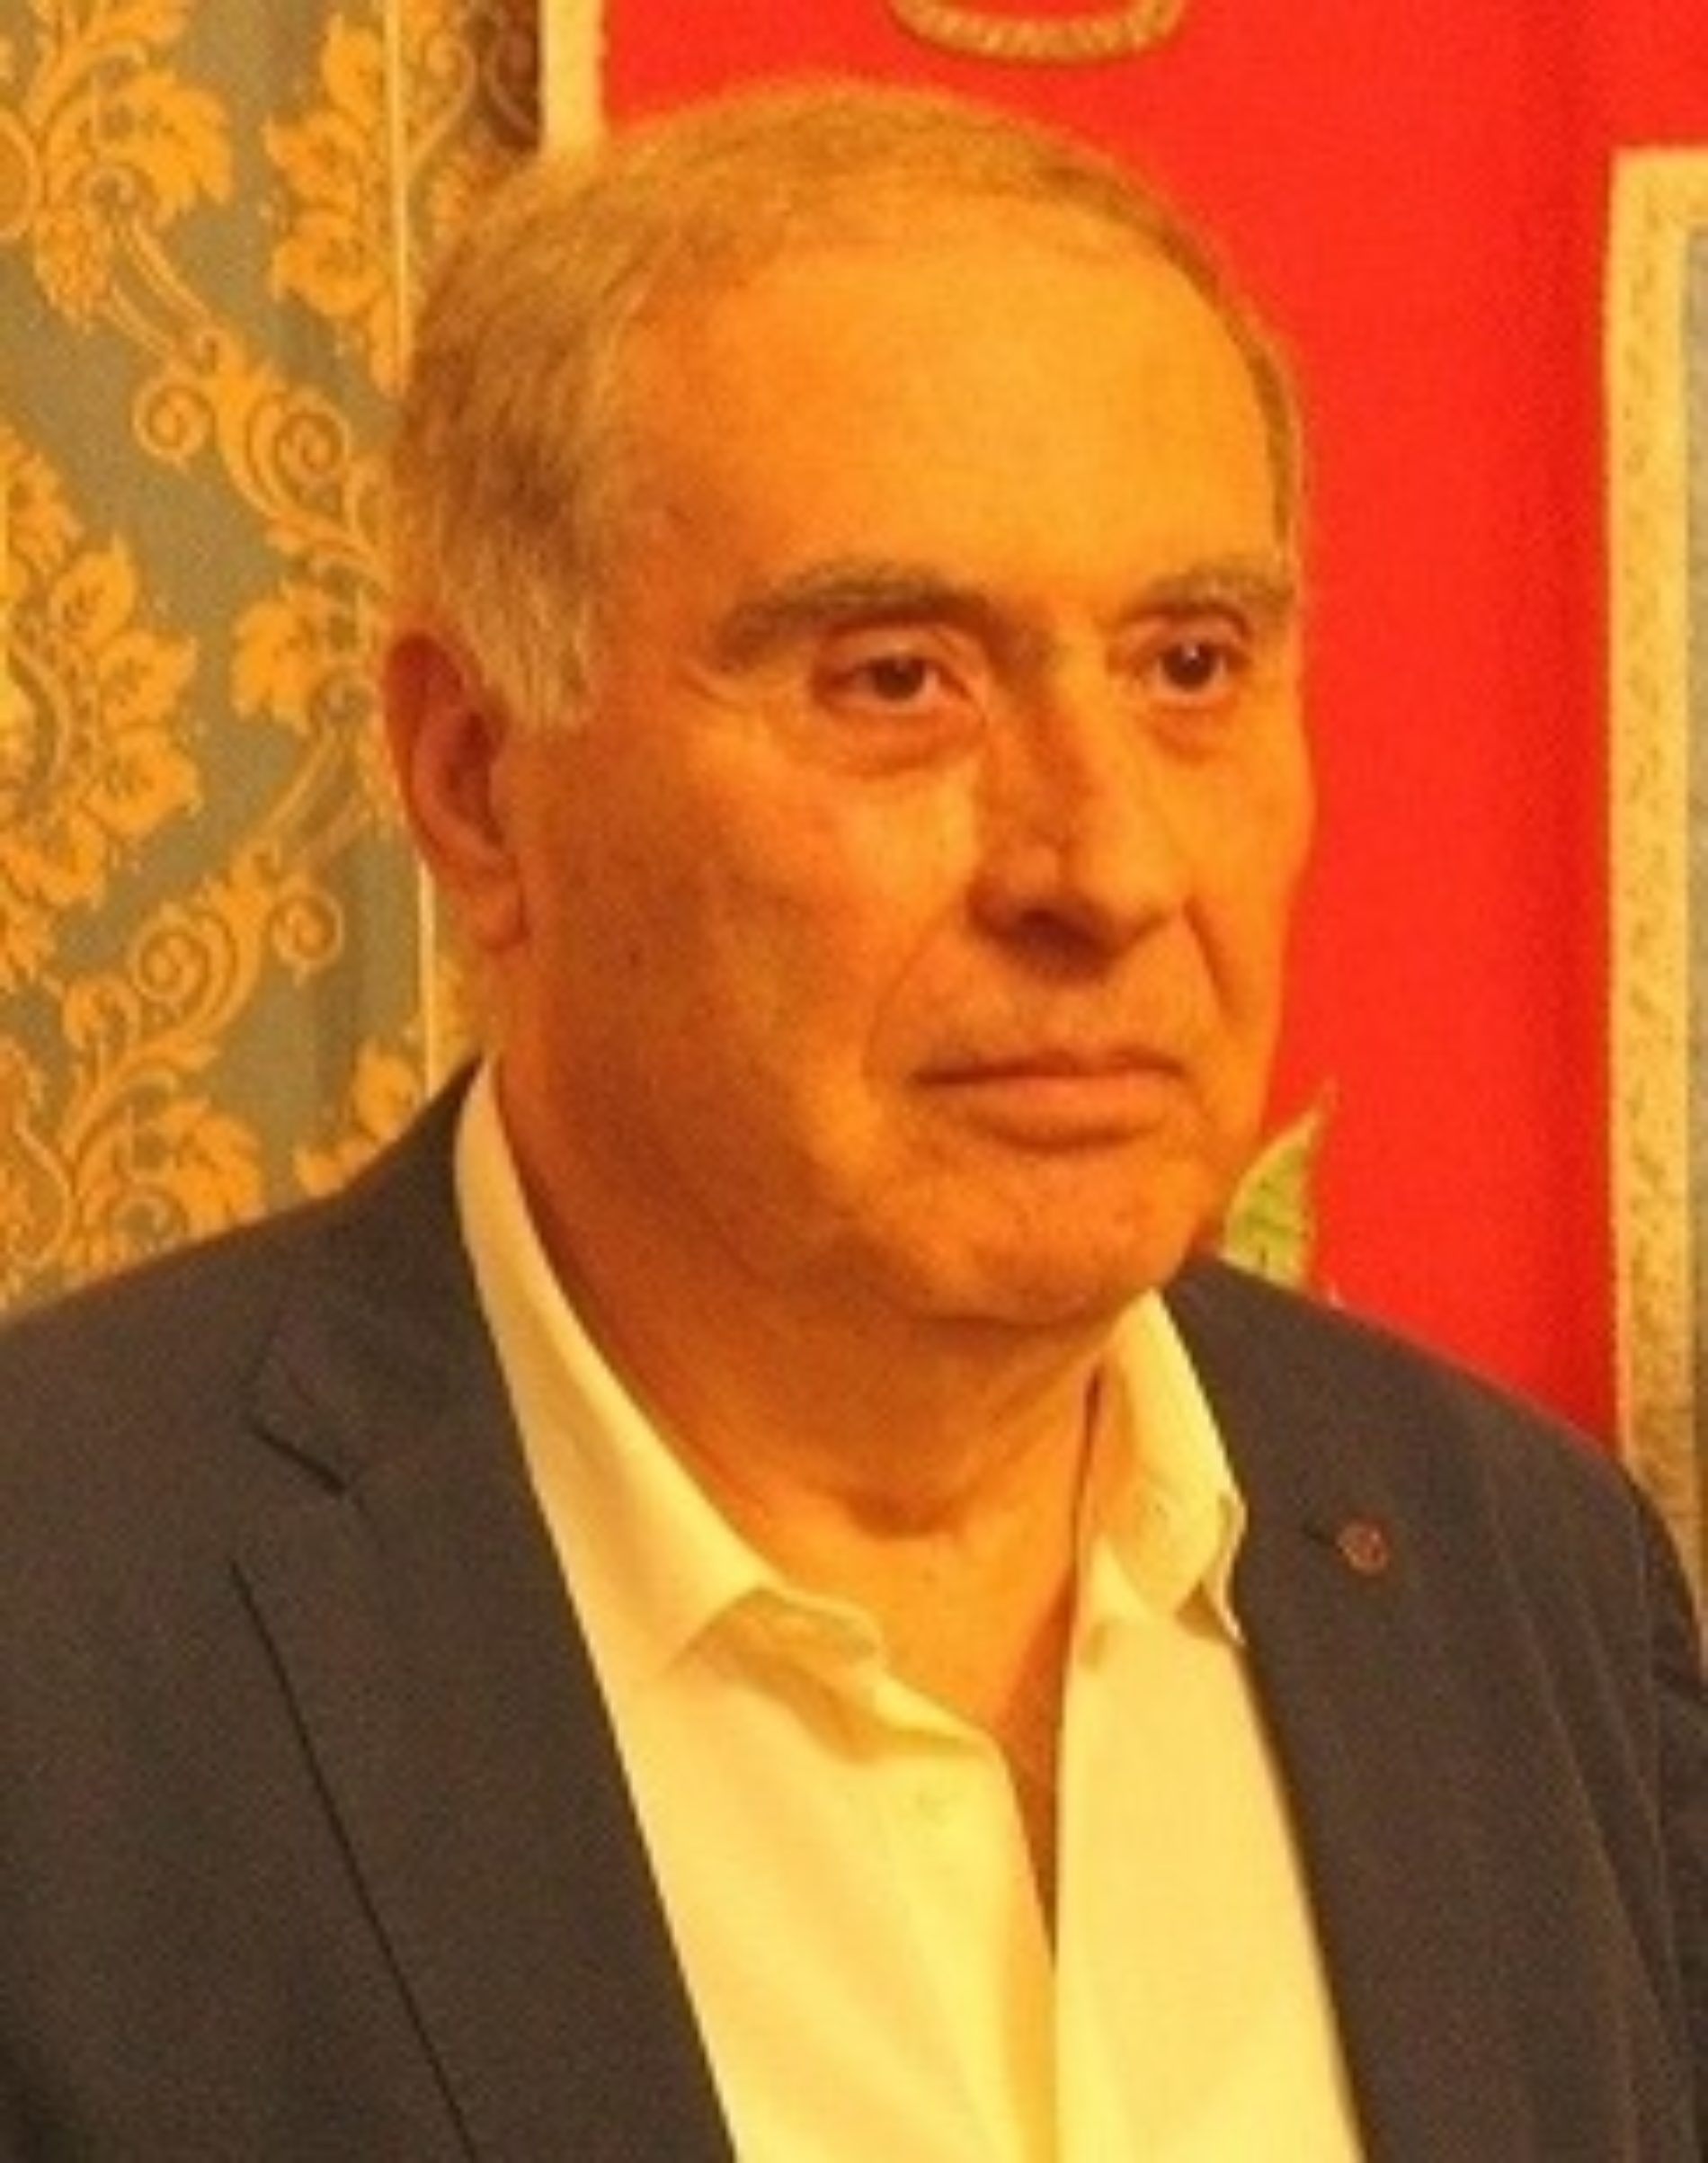 BARRAFRANCA. Amministrative 2023. Enzo Pace, ex comandante la stazione carabinieri cittadina, candidato alla carica di sindaco.